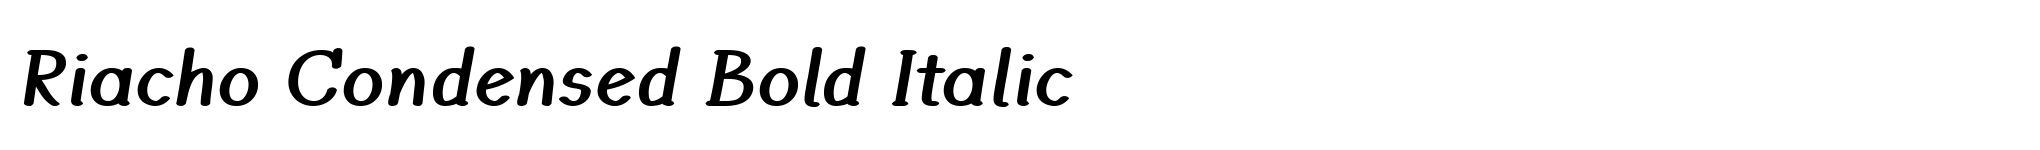 Riacho Condensed Bold Italic image